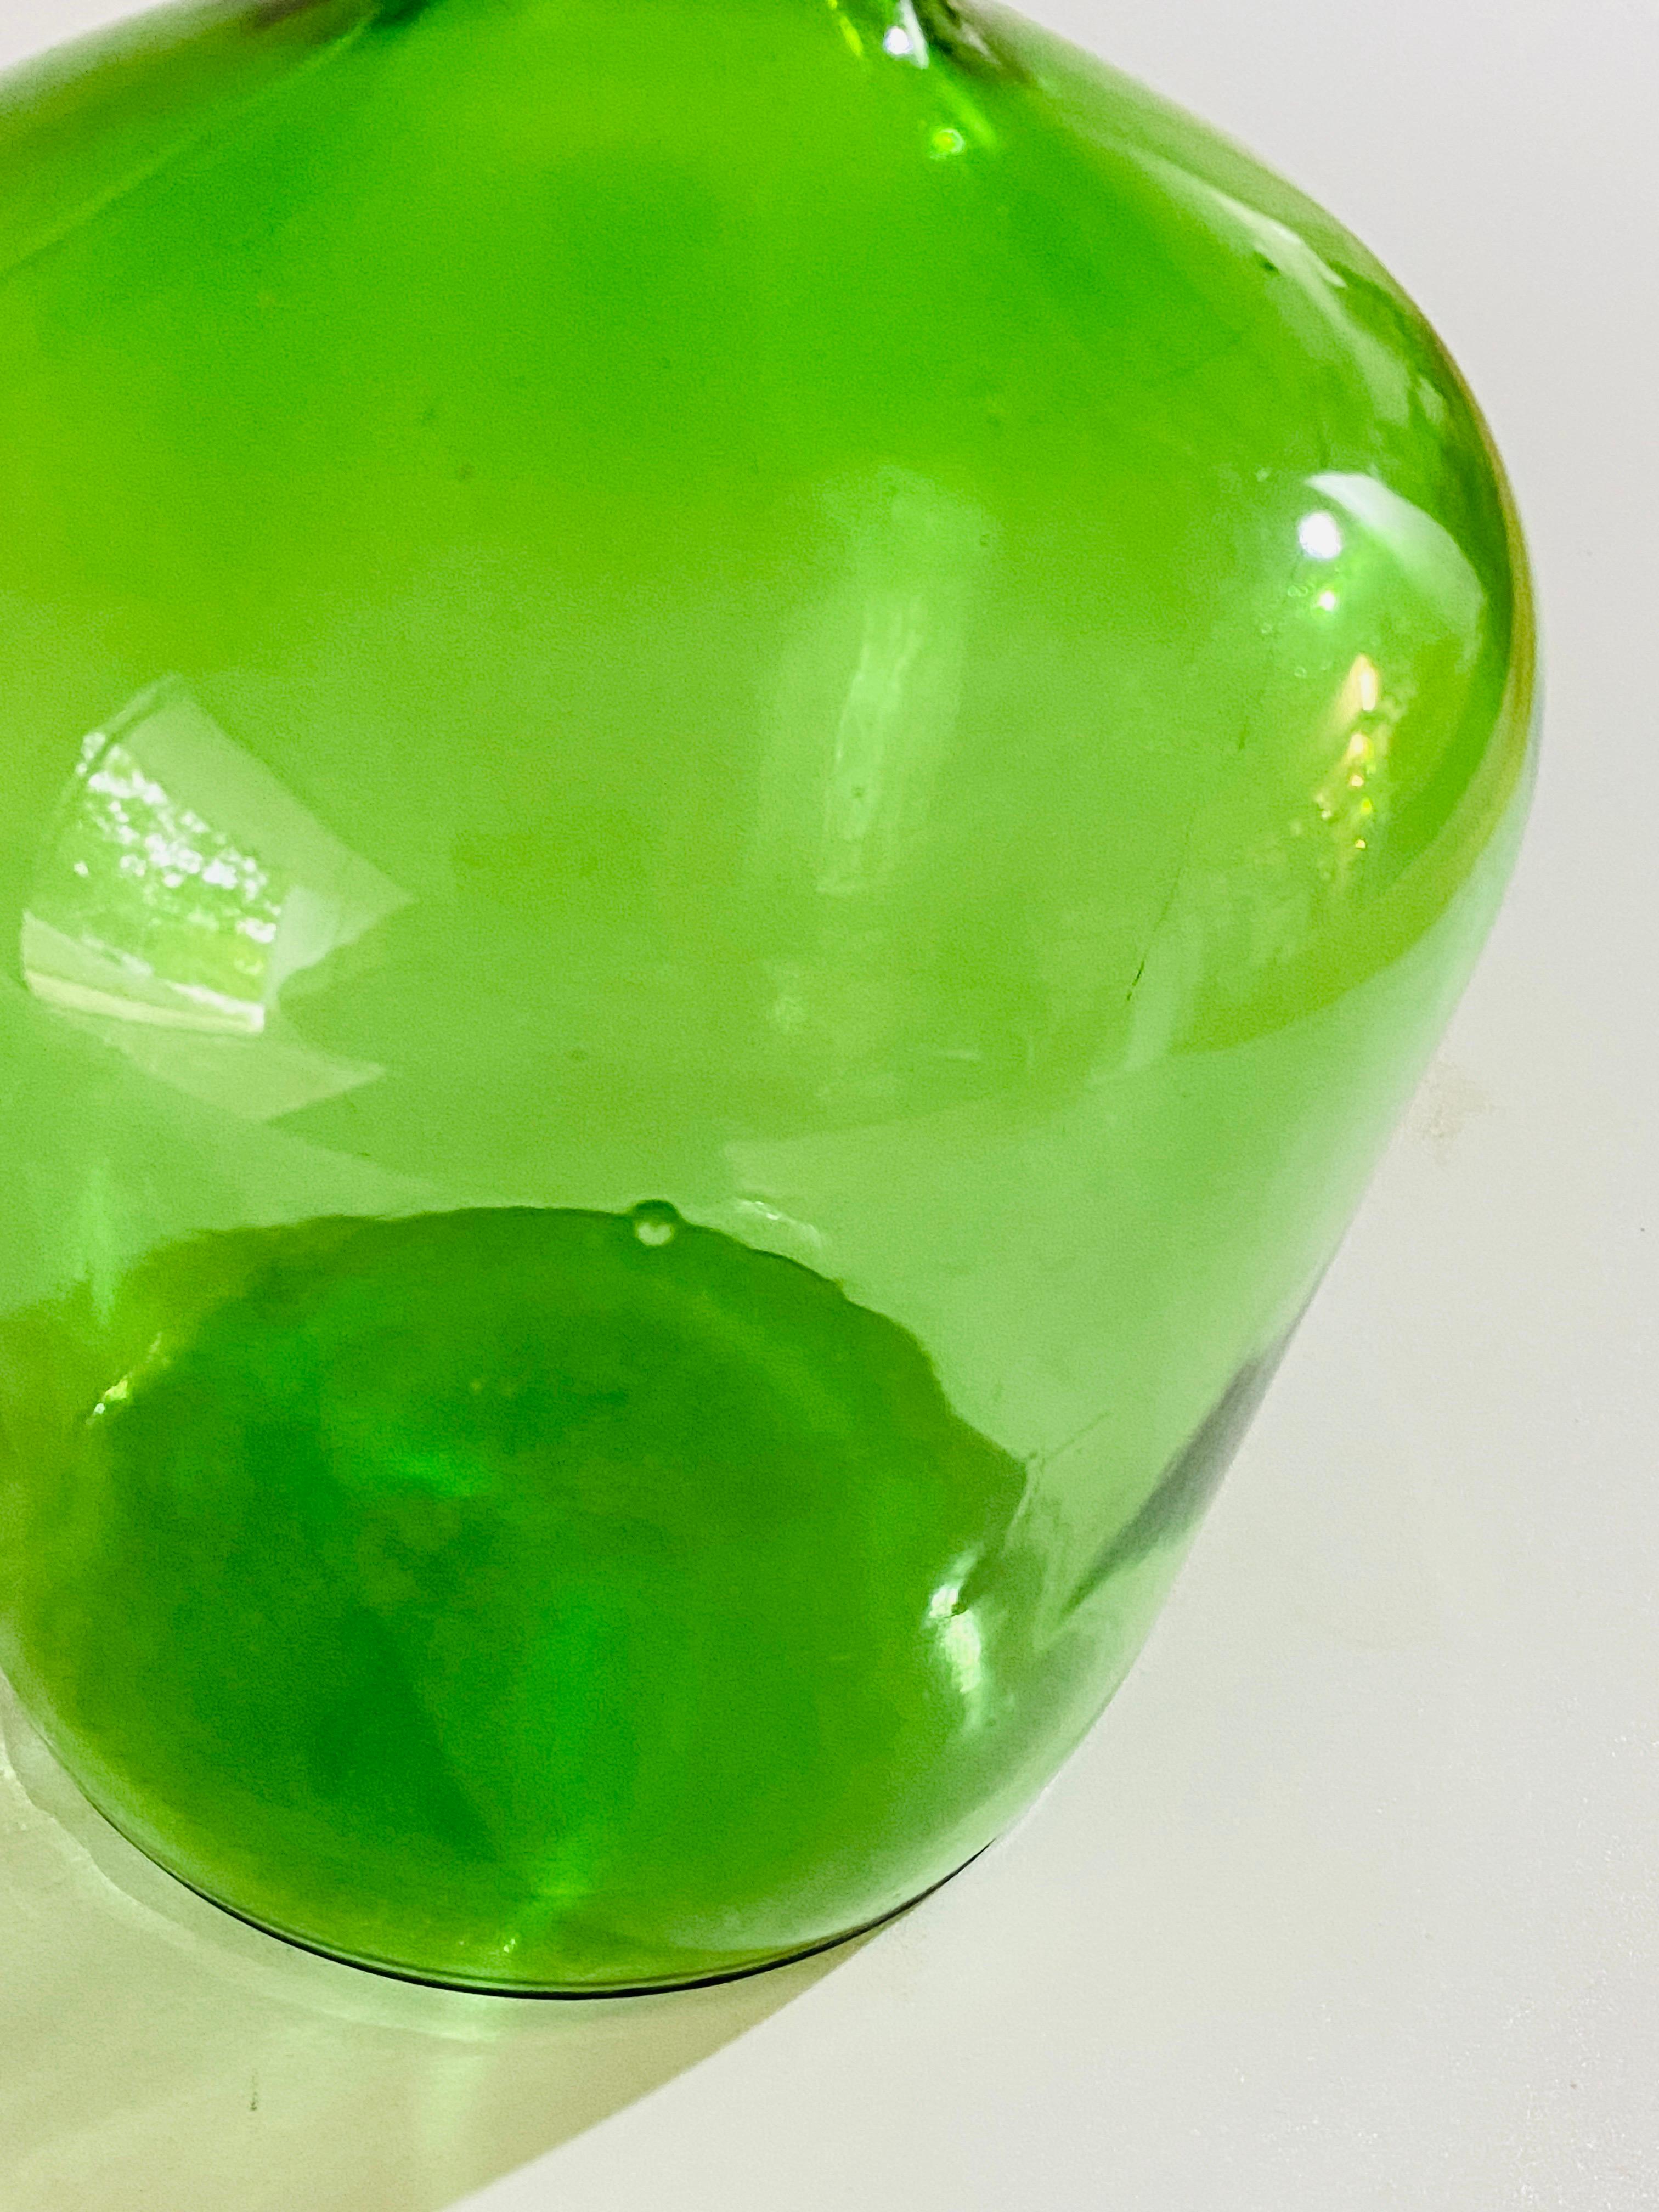 Diese dekorativen Glasflaschen wurden um 1950 in Frankreich hergestellt. Sie sind typisch französisch procencial Style Form, in einer grünen Farbe.
Größen
Taller Tiefe 20cm groß 20cm hoch 32
Kleinere Tiefe 15cm groß 15cm hoch 26.